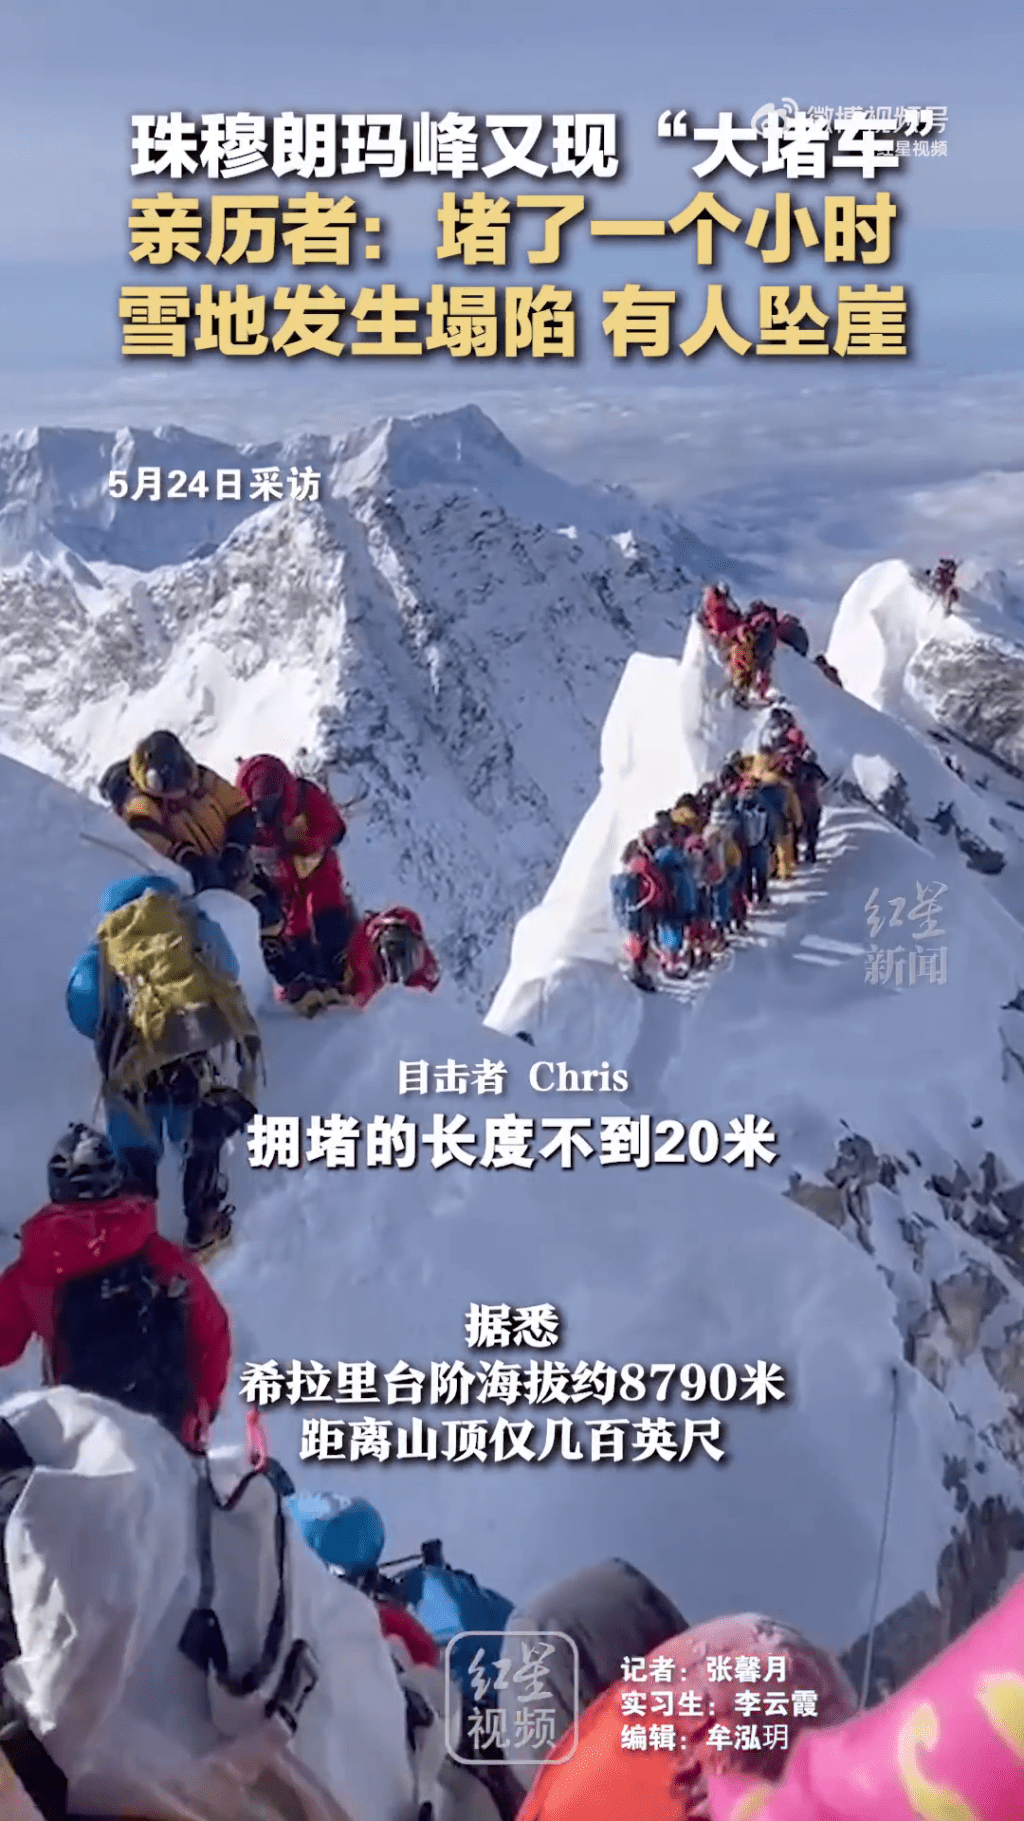 珠峰有登山者称有人堕崖。